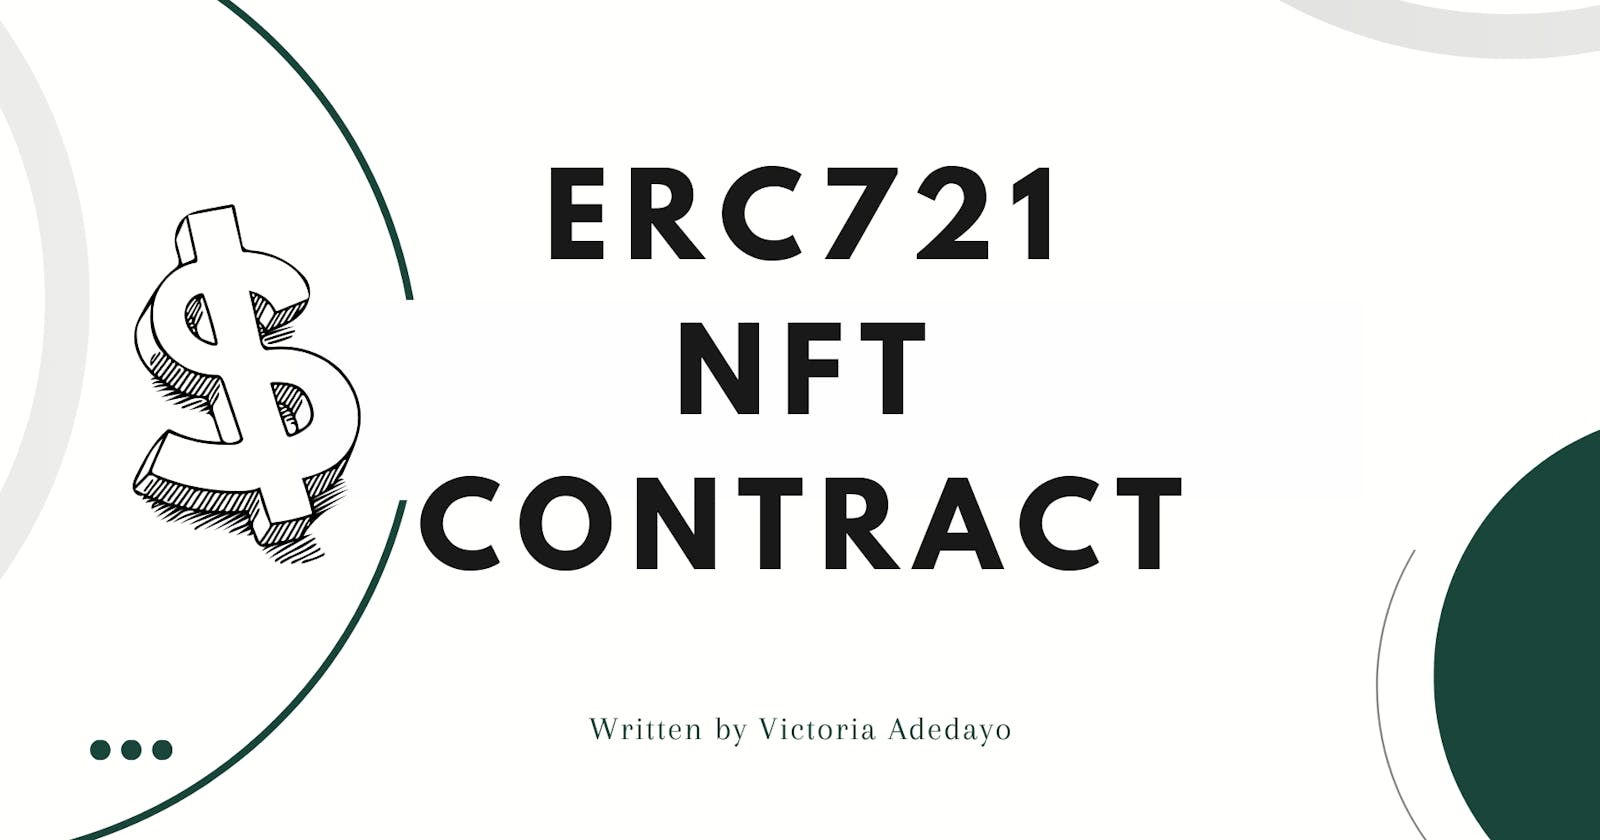 An ERC721 Non-Fungible-Token (NFT) Smart Contract